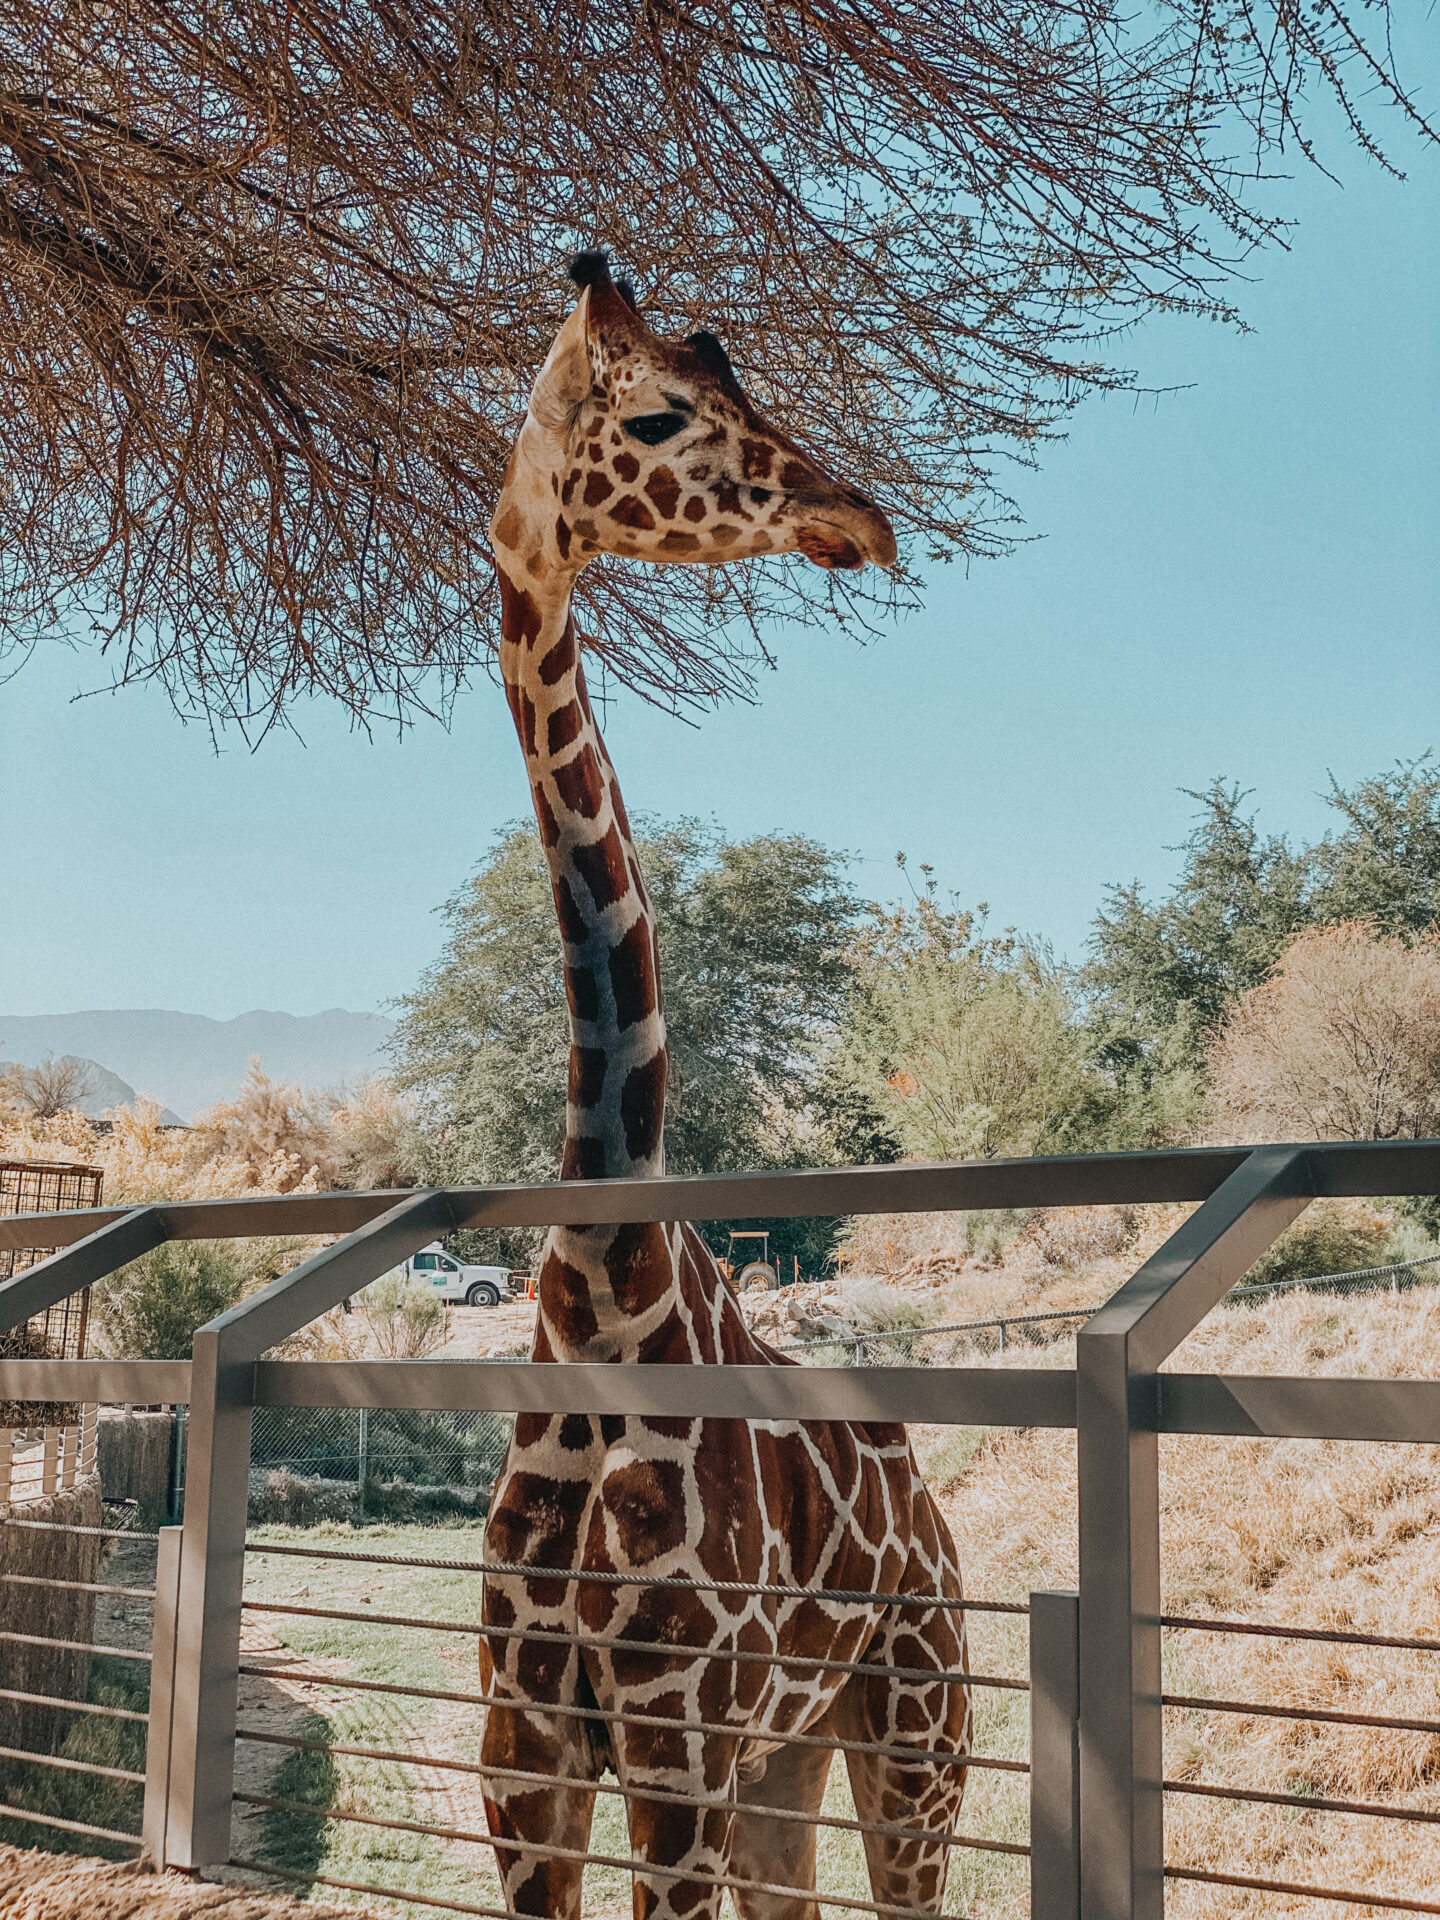 Palm Desert The Living Desert Zoo giraffe feeding - Palm Trees and Pellegrino California travel blog